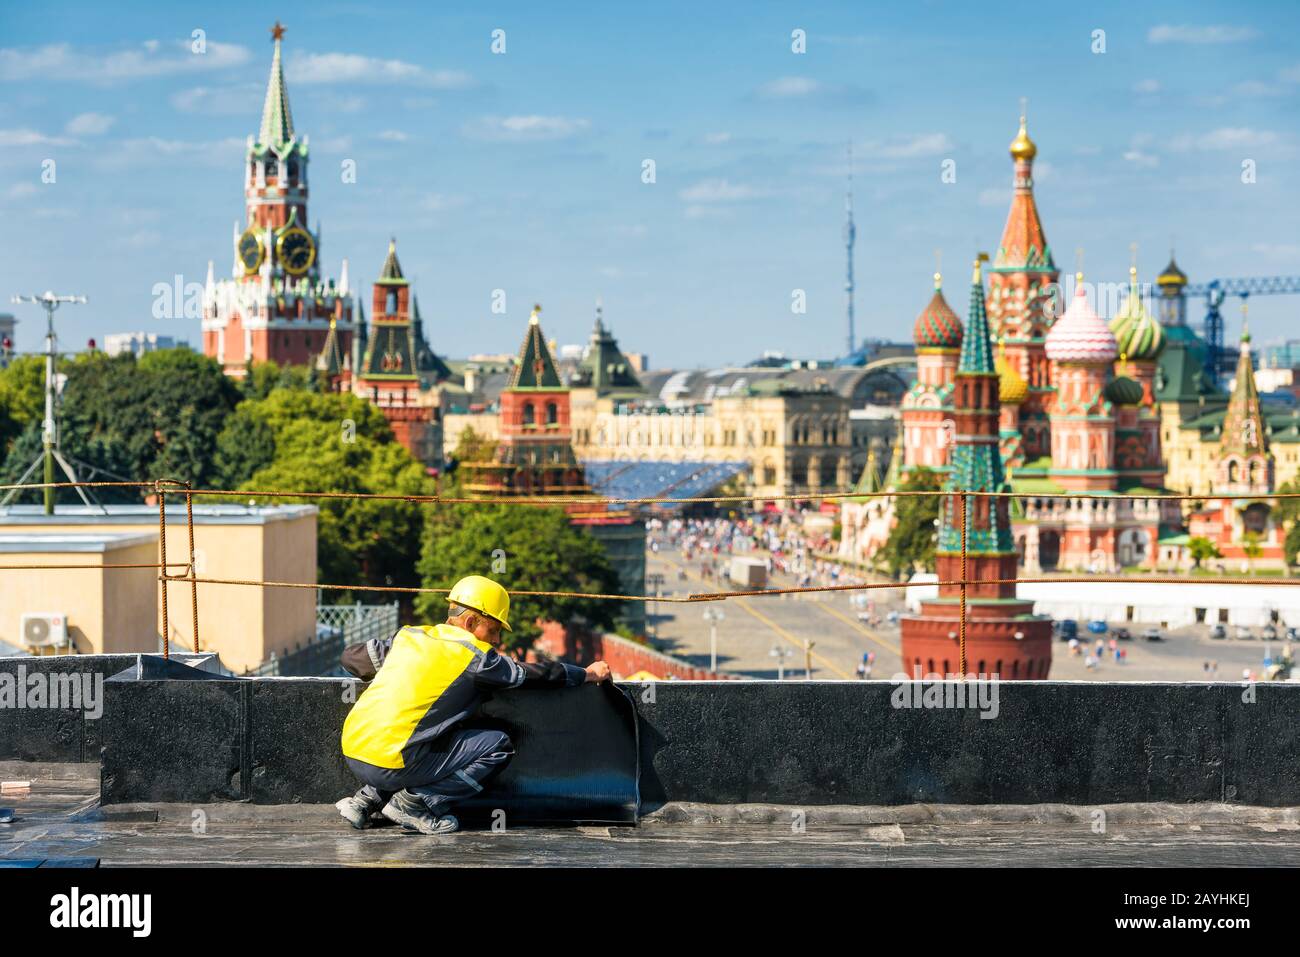 Moscú, Rusia - 10 de agosto de 2017: El trabajador trabaja en una obra en el centro de Moscú. Kremlin de Moscú y Catedral de San Basilio en el b Foto de stock